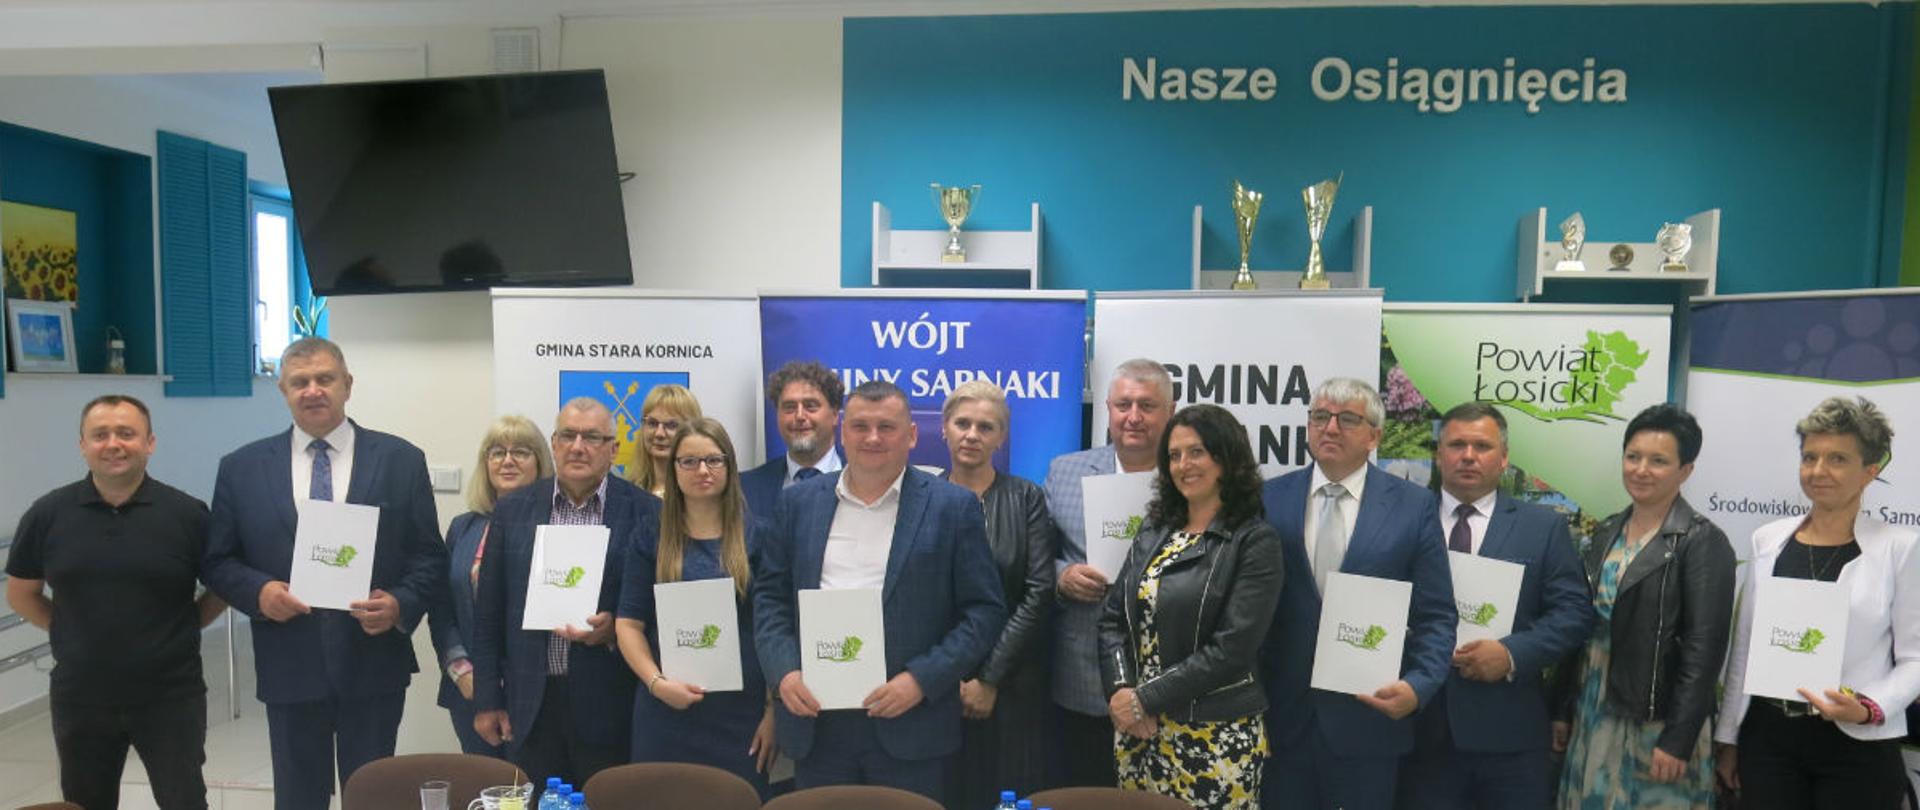 Przedstawiciele samorządów powiatu łosickiego podpisujący porozumienie w sprawie utworzenia Całodobowego Centrum Opiekuńczo-Mieszkalnego